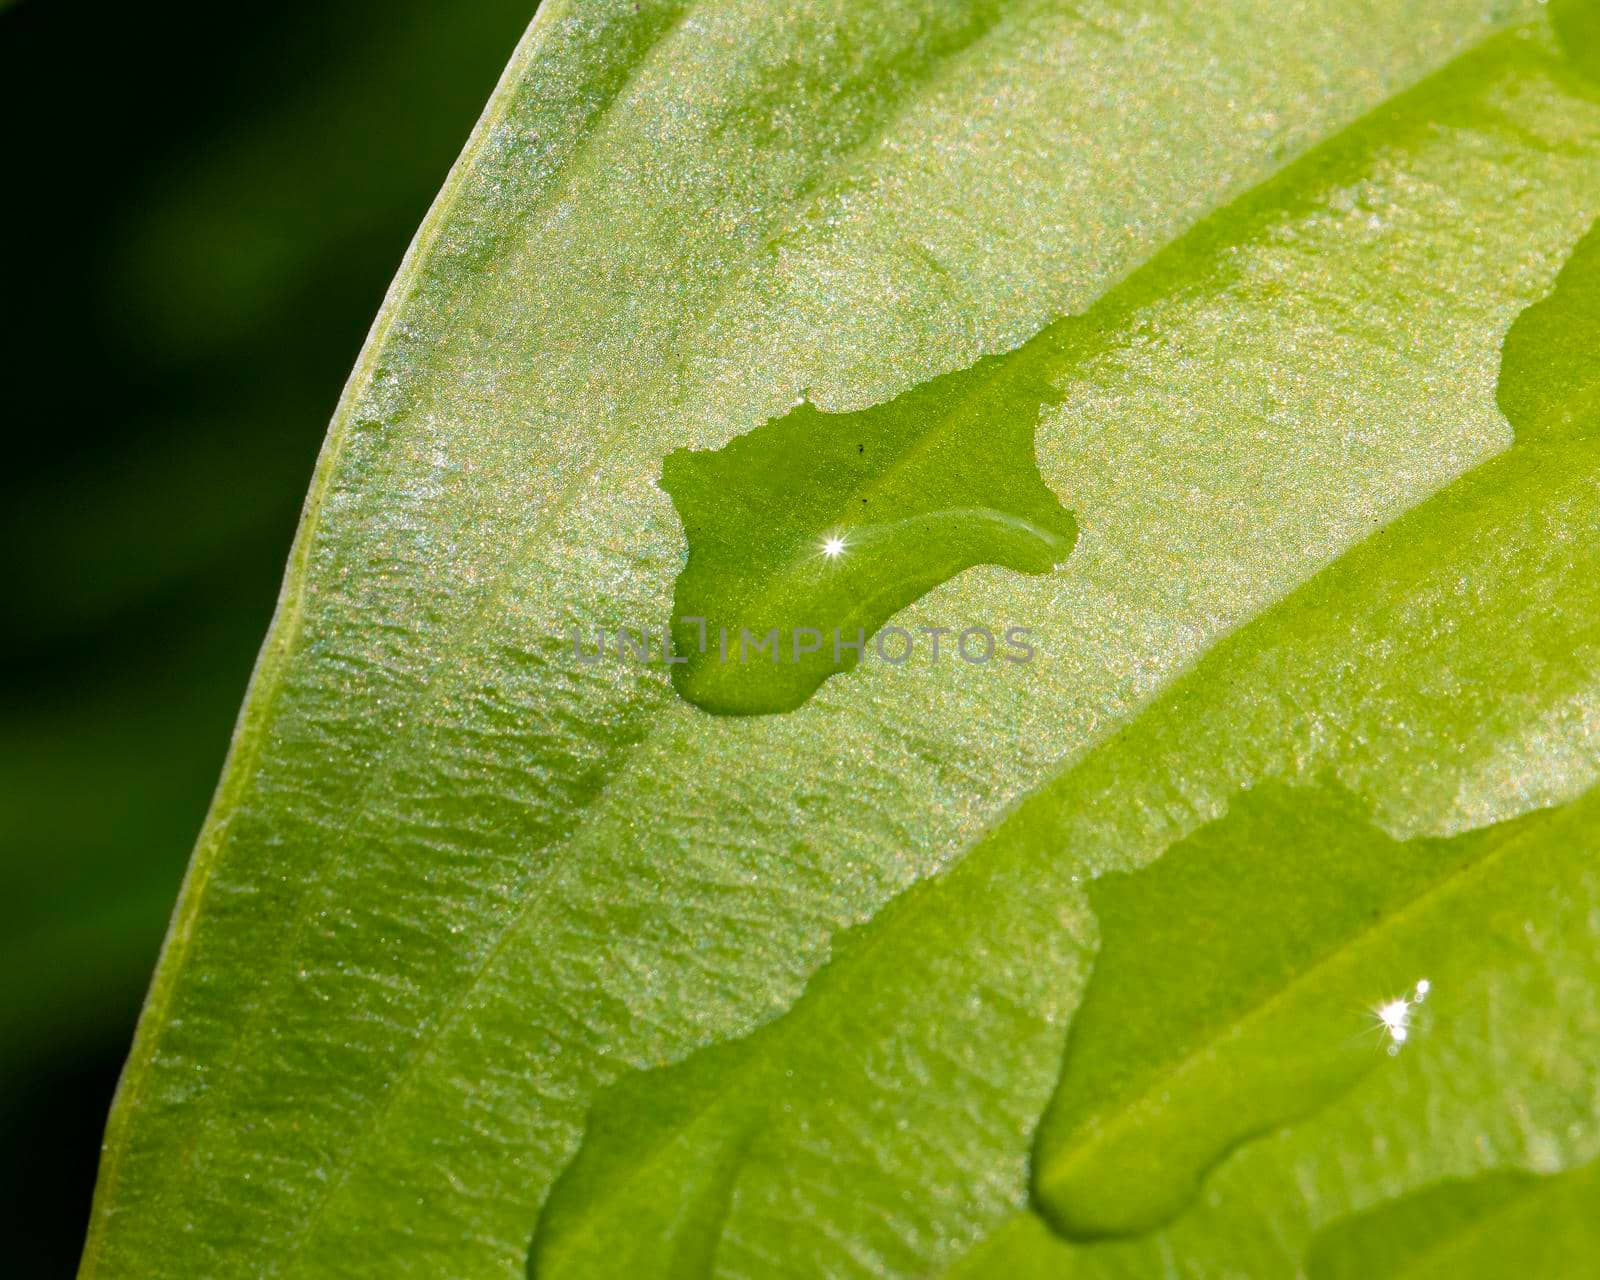 Raindrops on a Hosta Leaf by CharlieFloyd